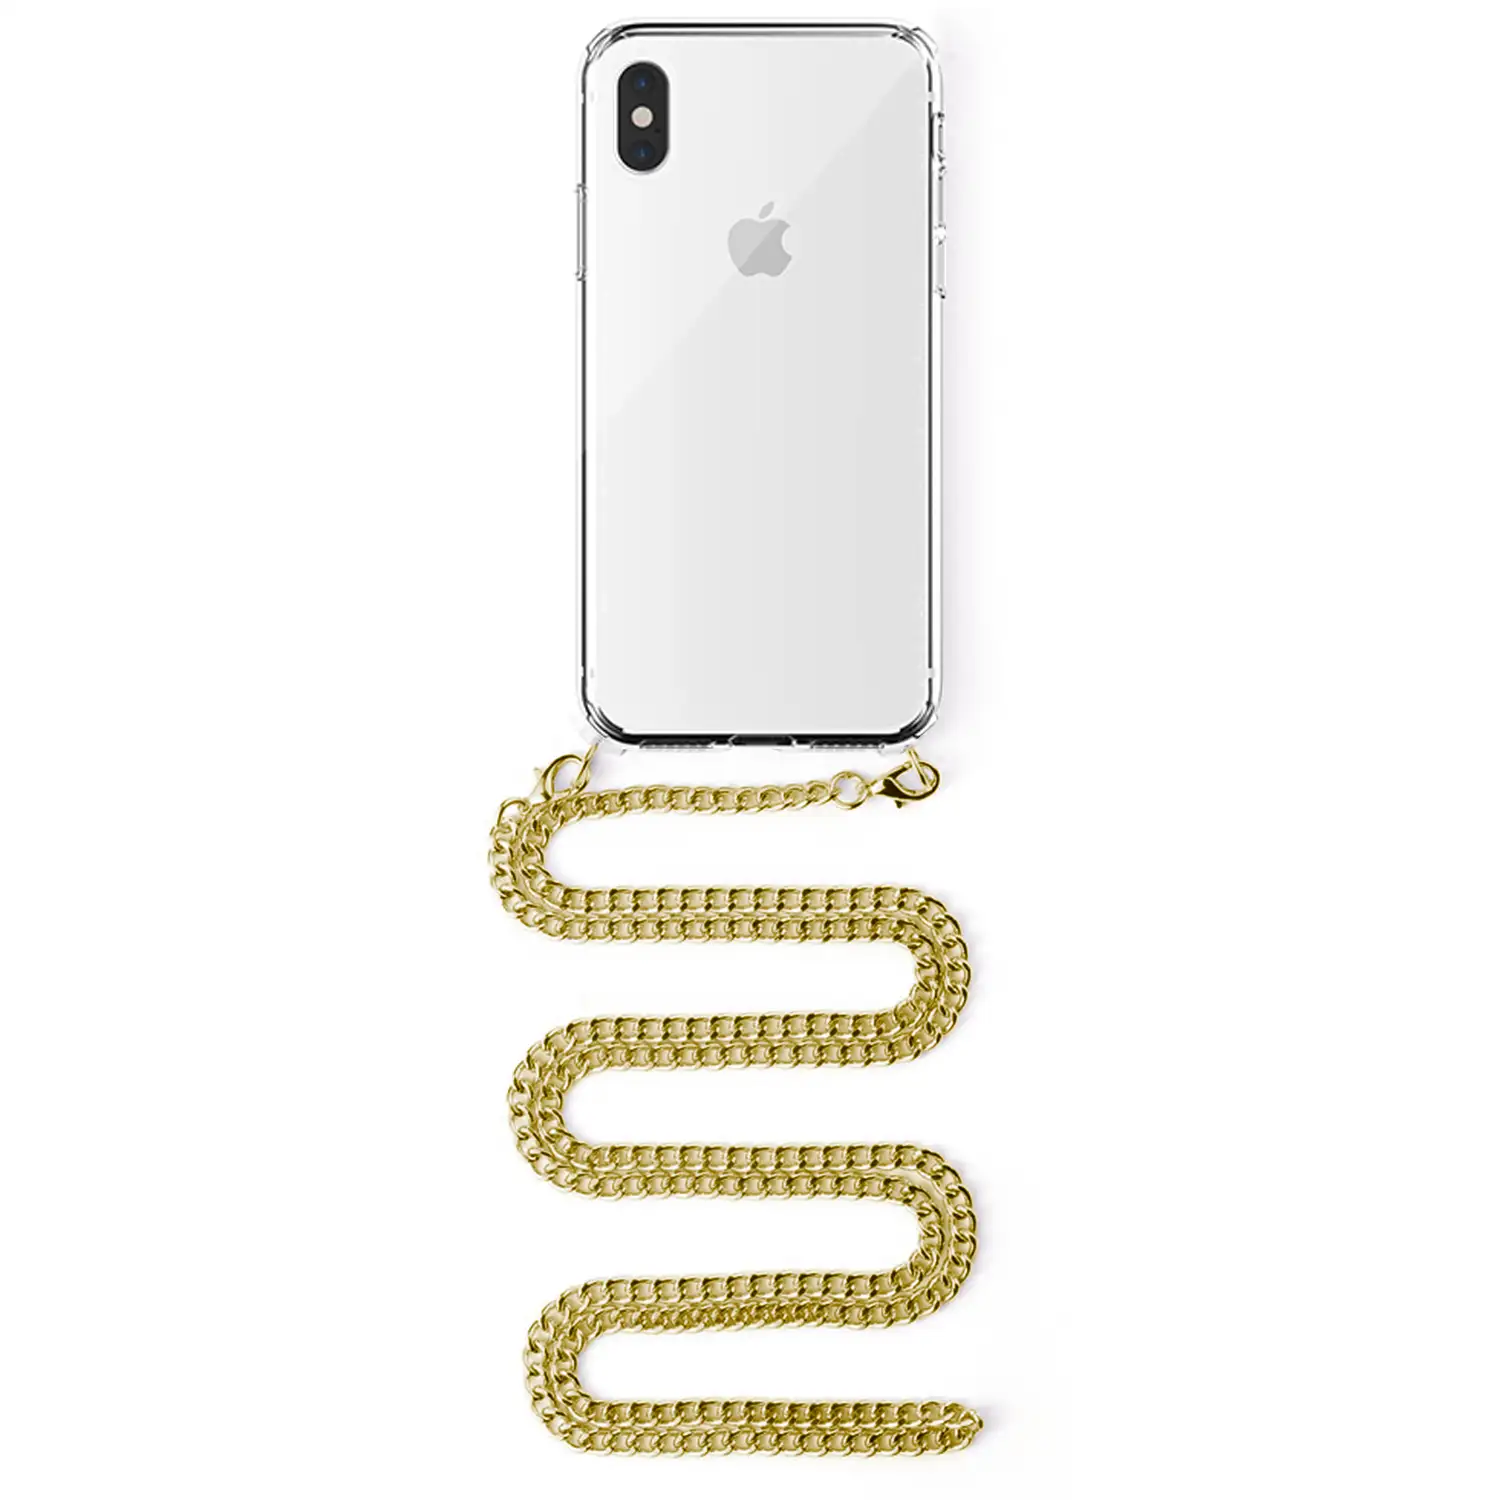 Emular Temeridad Recuerdo Carcasa transparente iPhone XS Max con colgante cadena metálica. Accesorio  de moda, ajuste perfecto y máxima